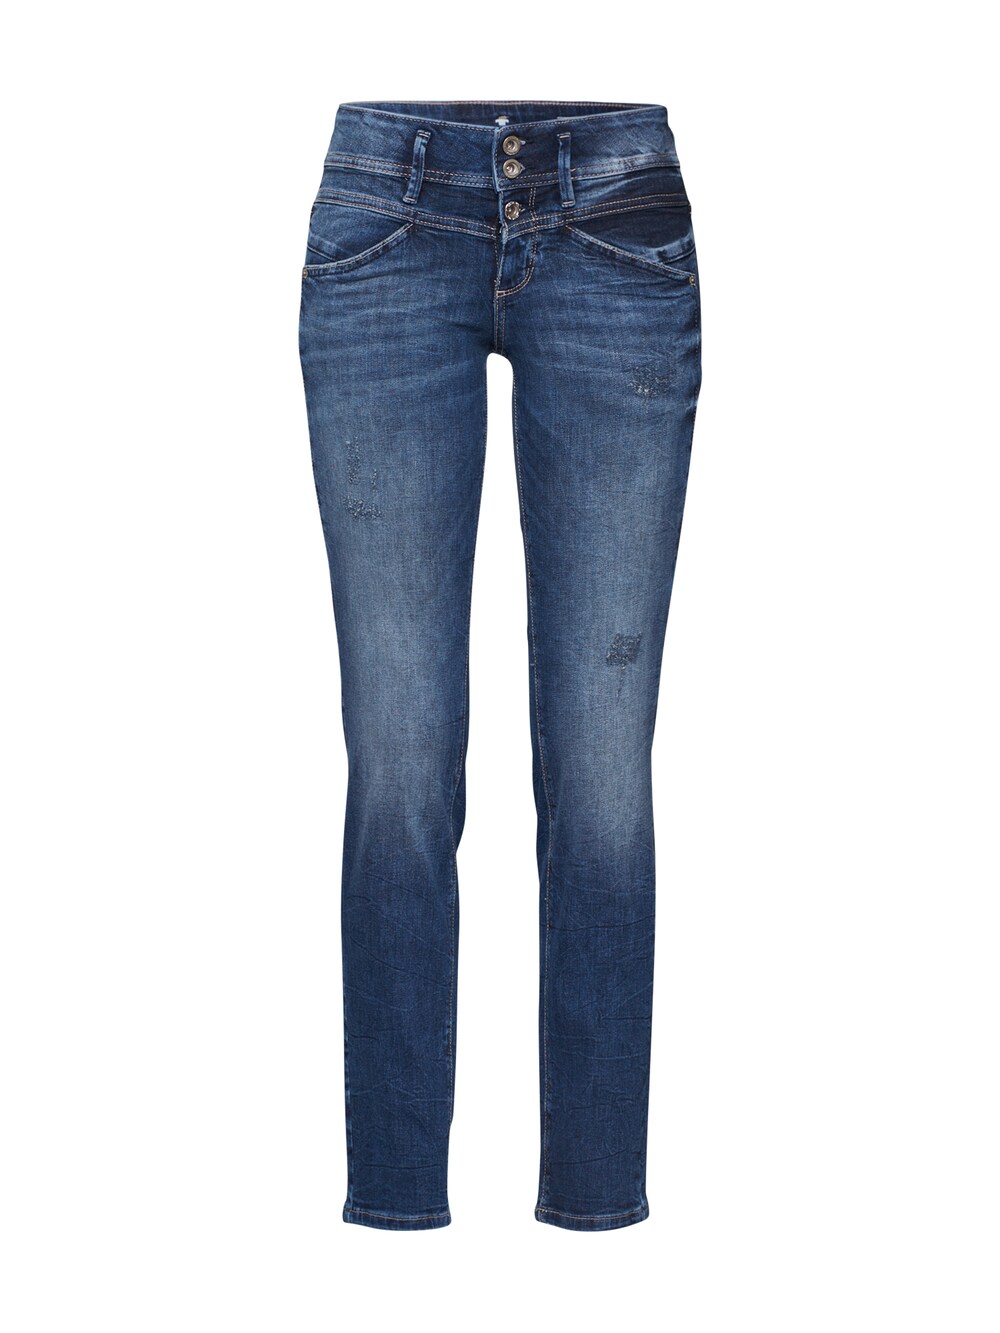 Джинсы узкого кроя Tom Tailor Alexa, синий джинсы скинни tom tailor alexa прилегающие средняя посадка стрейч размер 25 синий